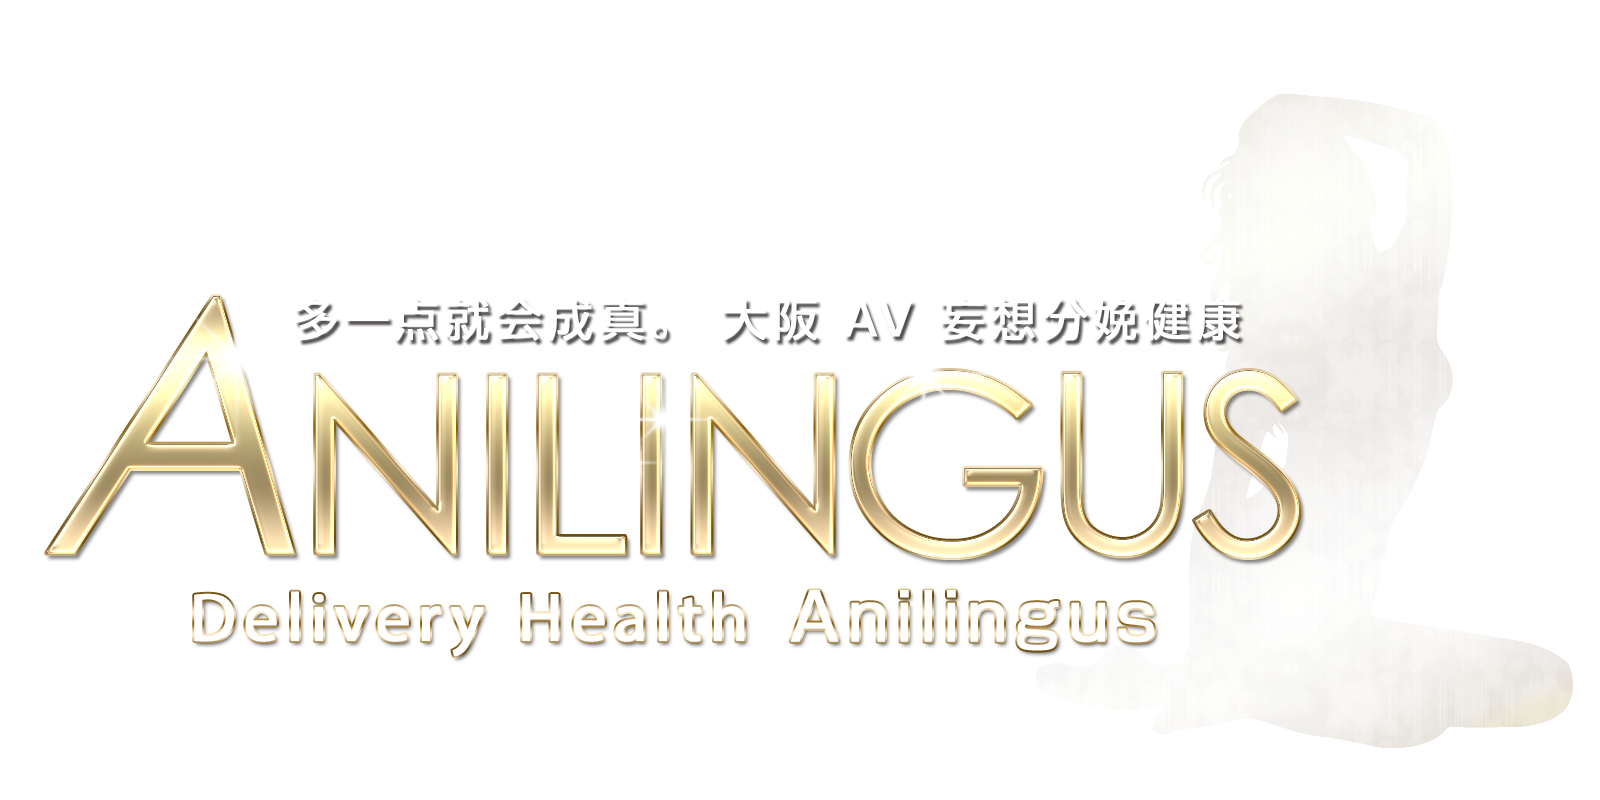 Anilingus Osaka 位于大阪茨城县的 AV 错觉交付健康中